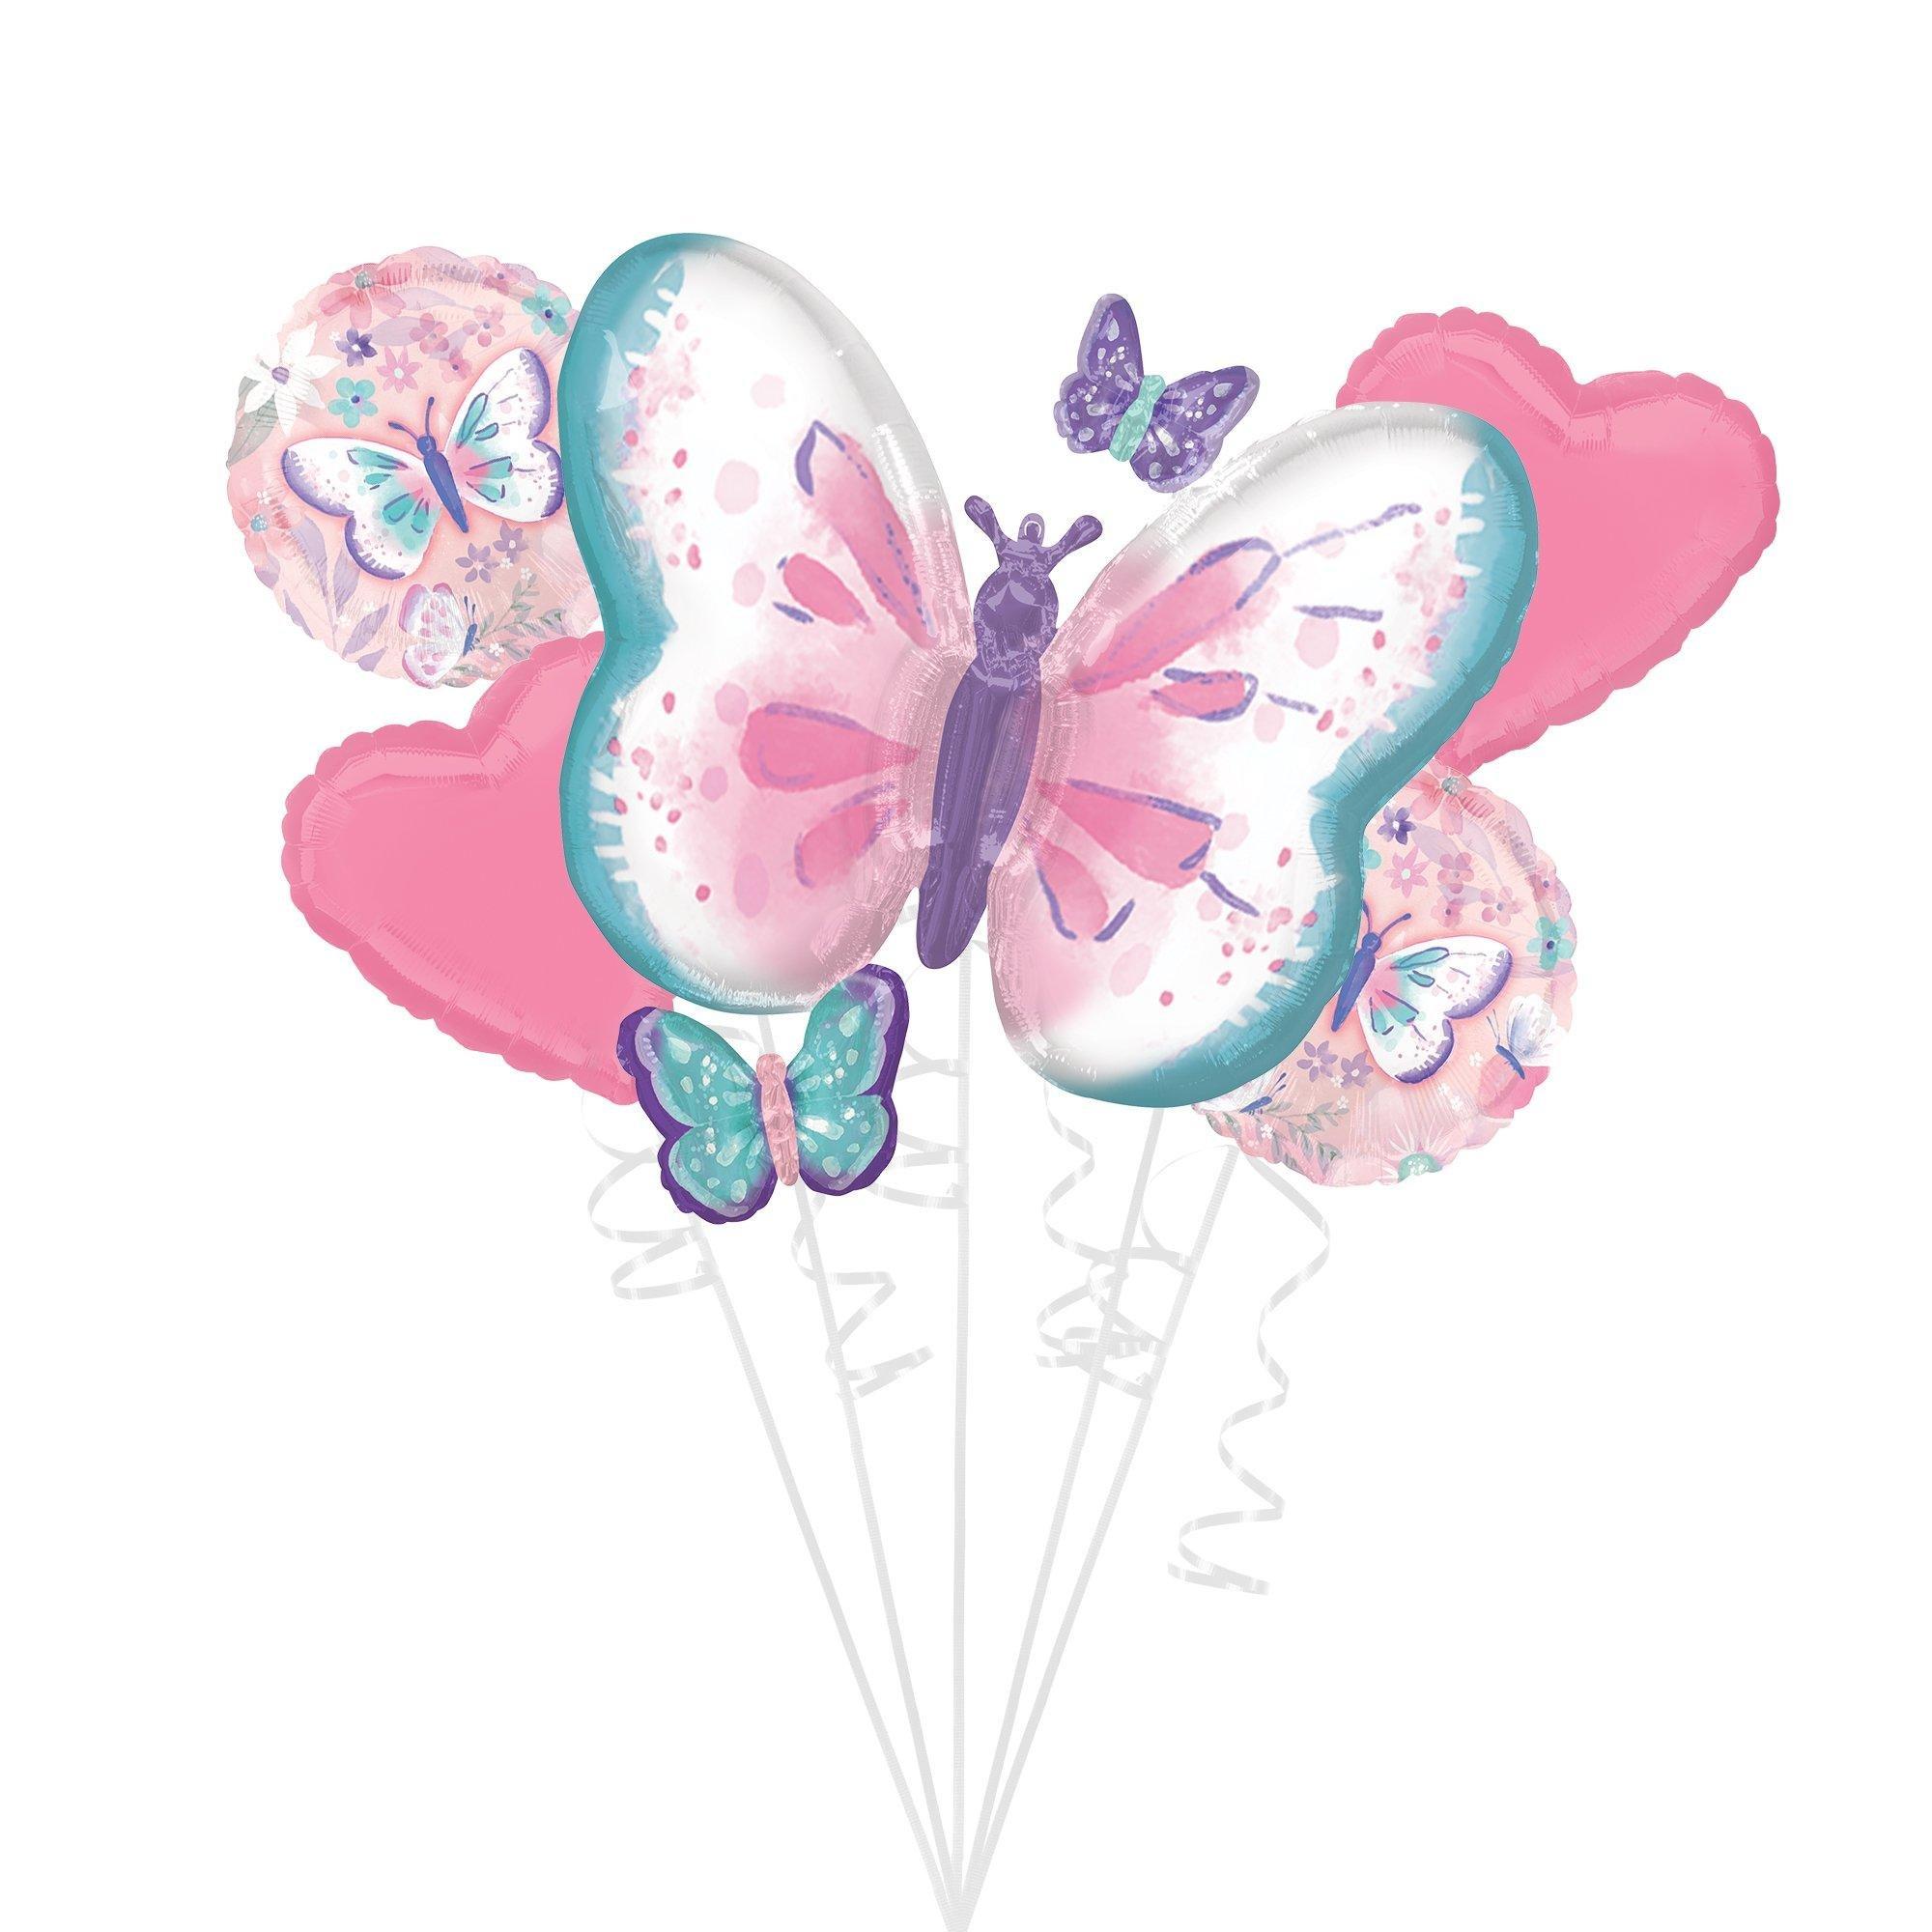 Premium Fluttering Butterflies Foil Balloon Bouquet with Balloon Weight, 13pc